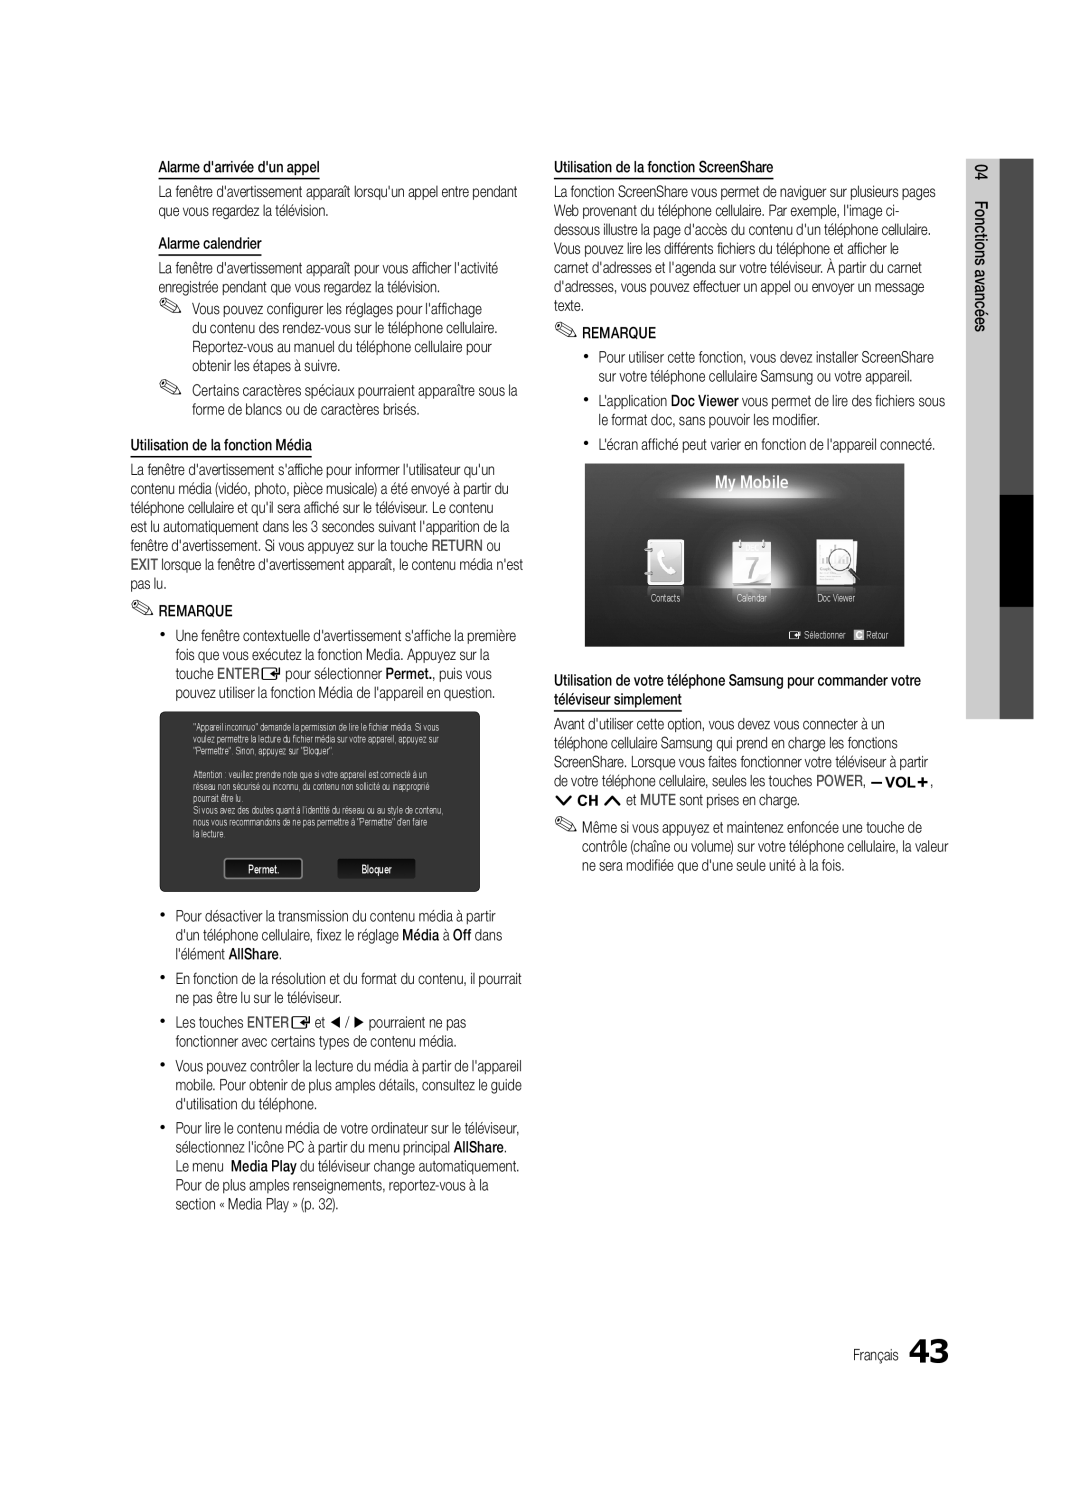 Samsung UC5000-ZC, BN68-03004B-02 user manual My Mobile, xx Lécran affiché peut varier en fonction de lappareil connecté 